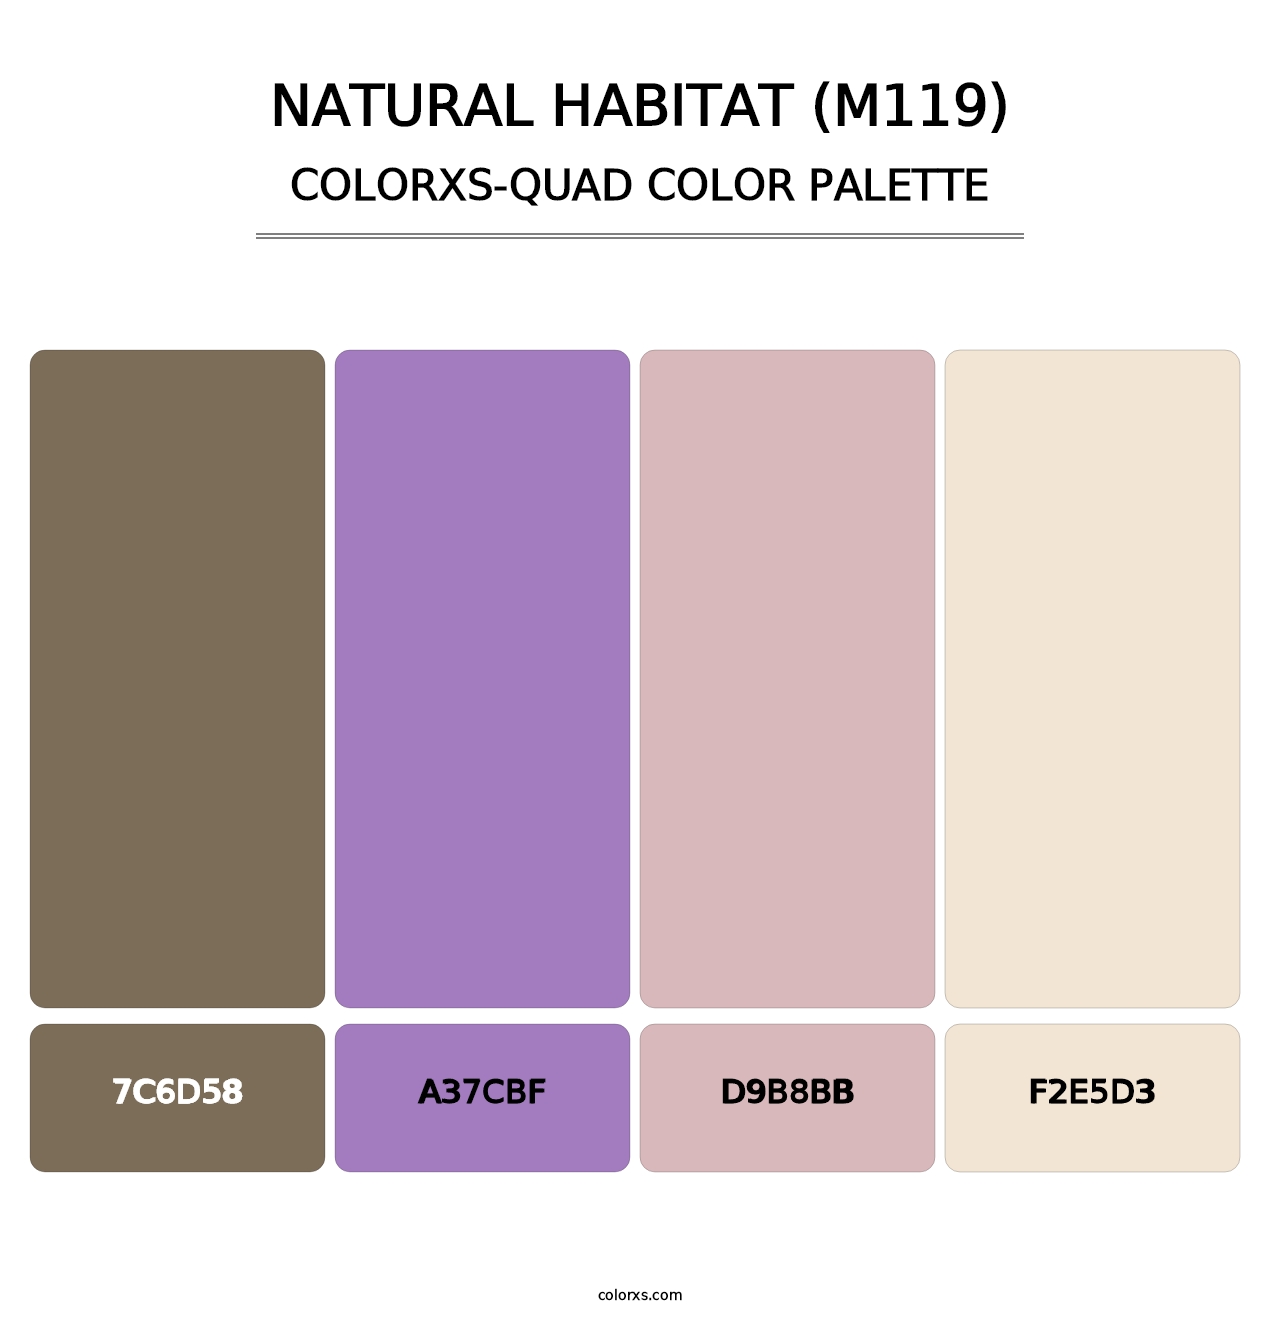 Natural Habitat (M119) - Colorxs Quad Palette